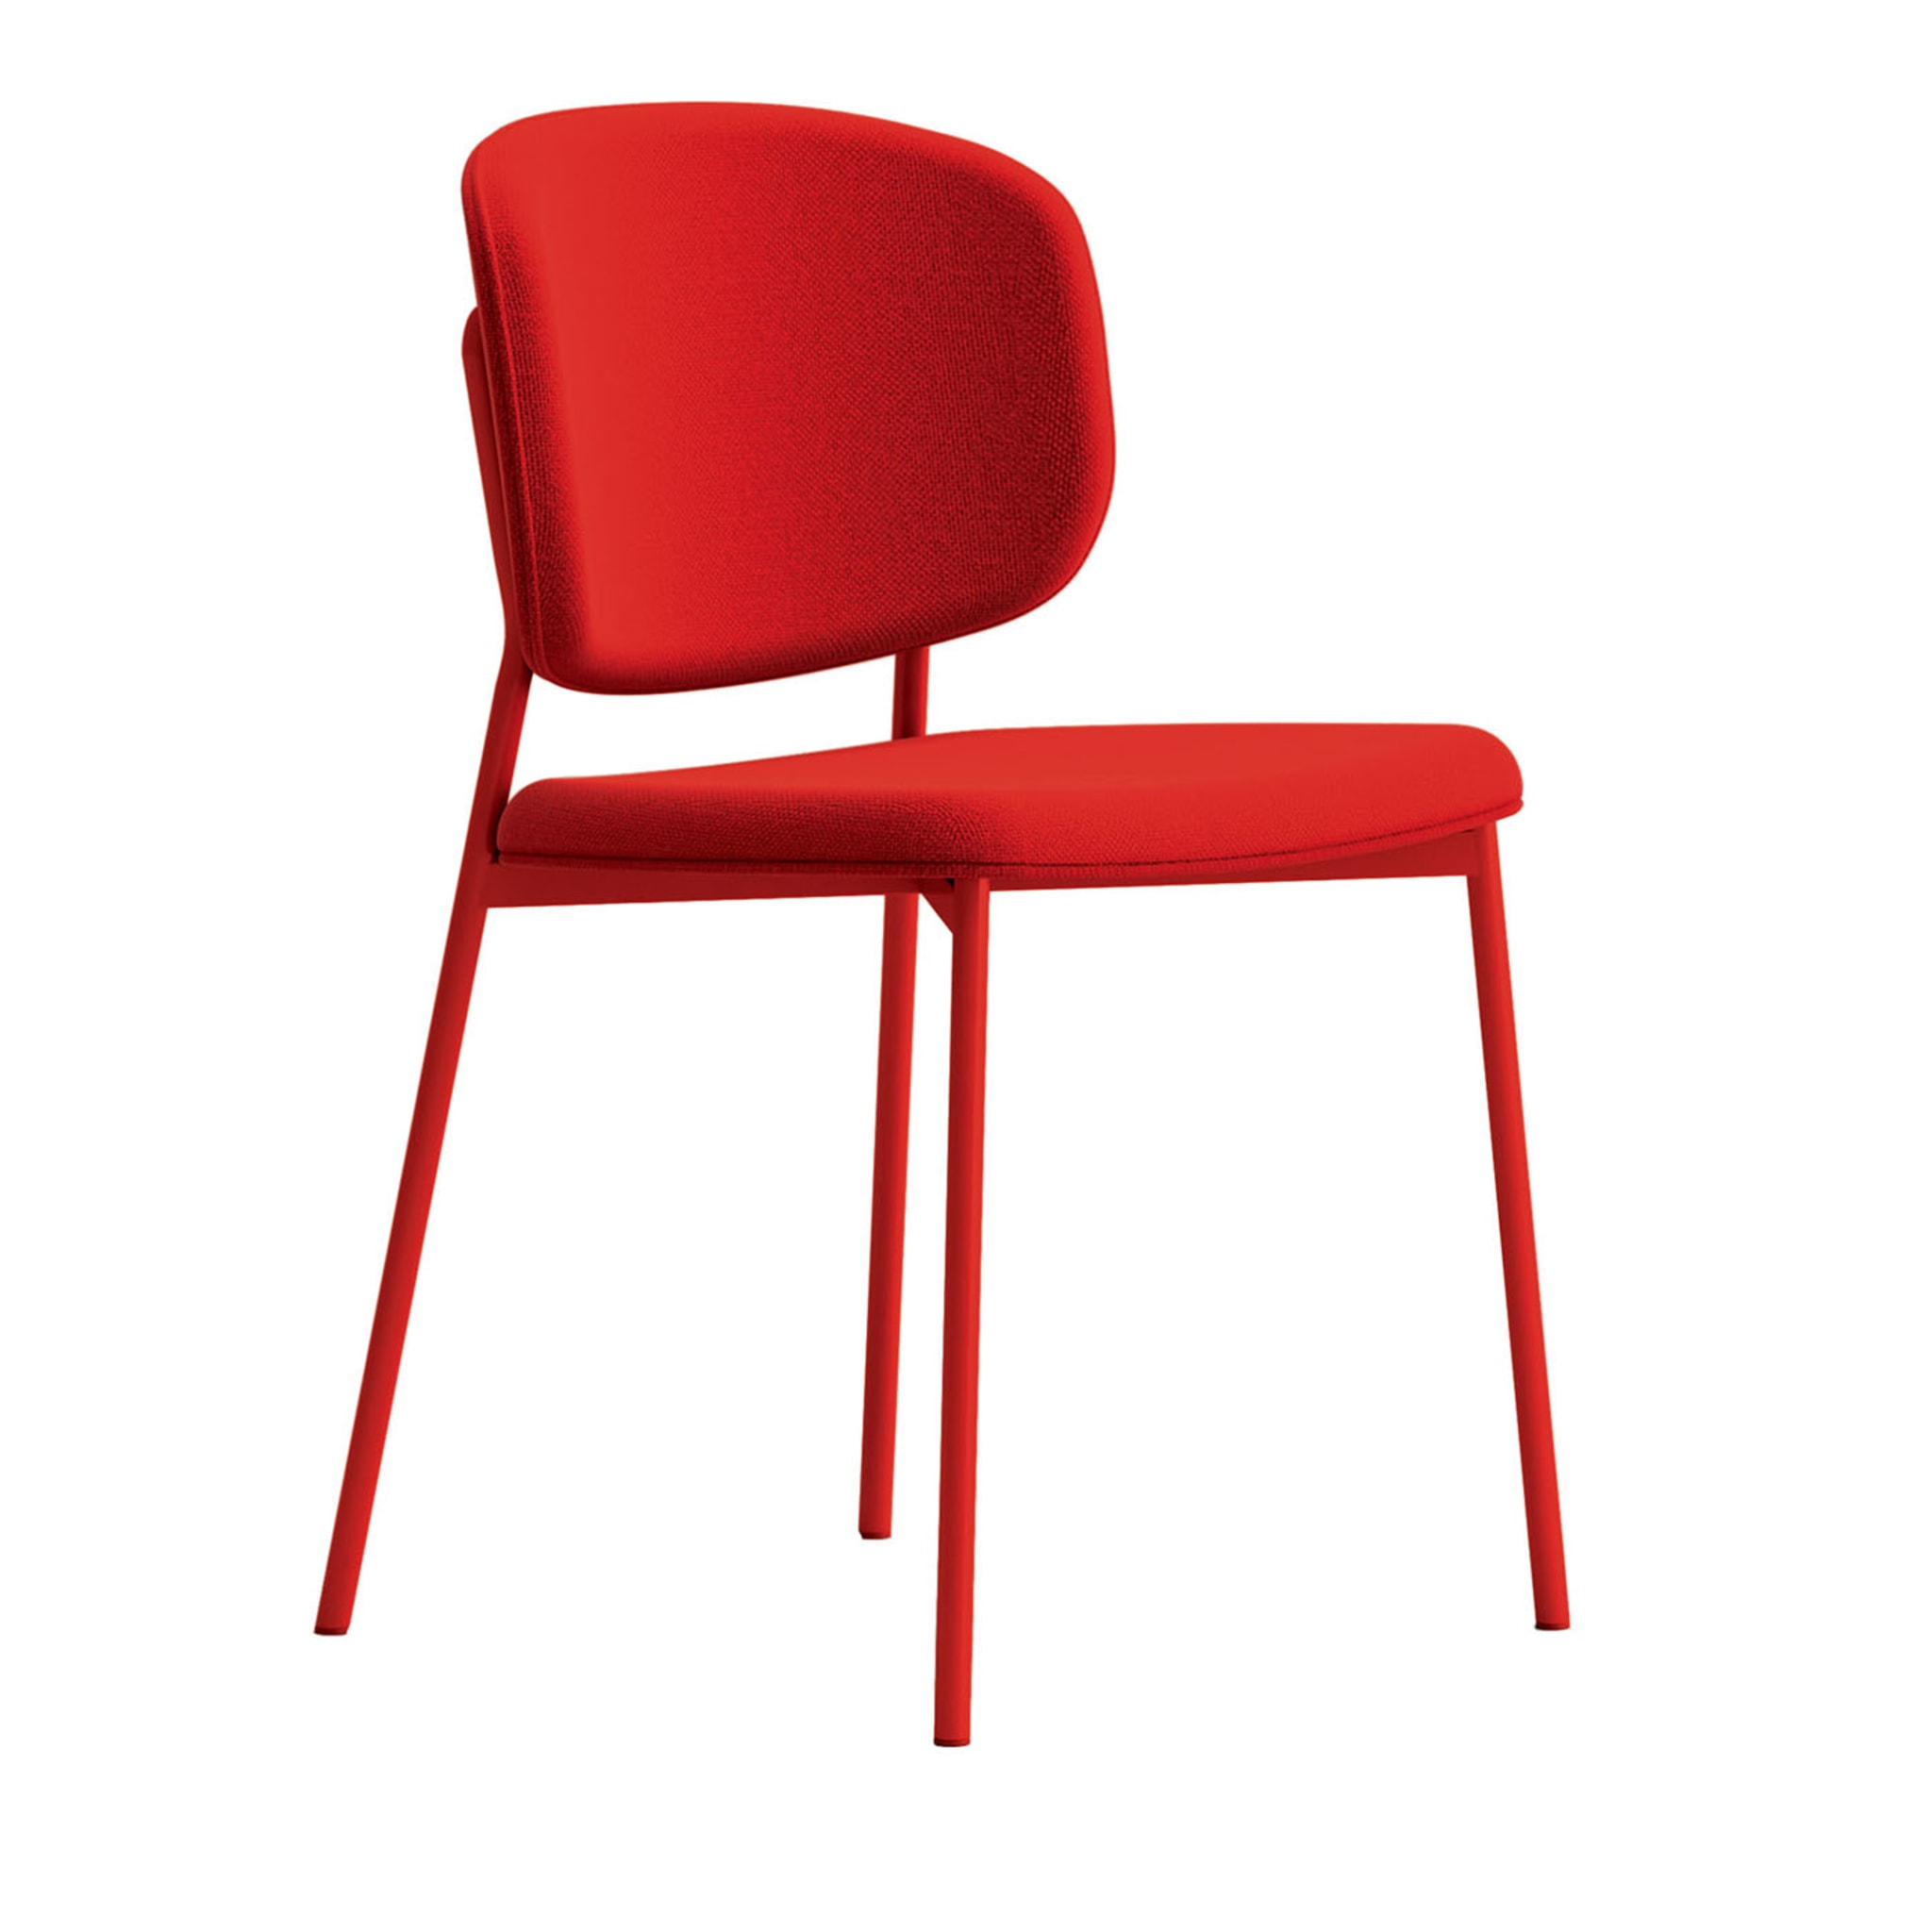 Wround Red Stuhl von Copiosa Lab - Hauptansicht